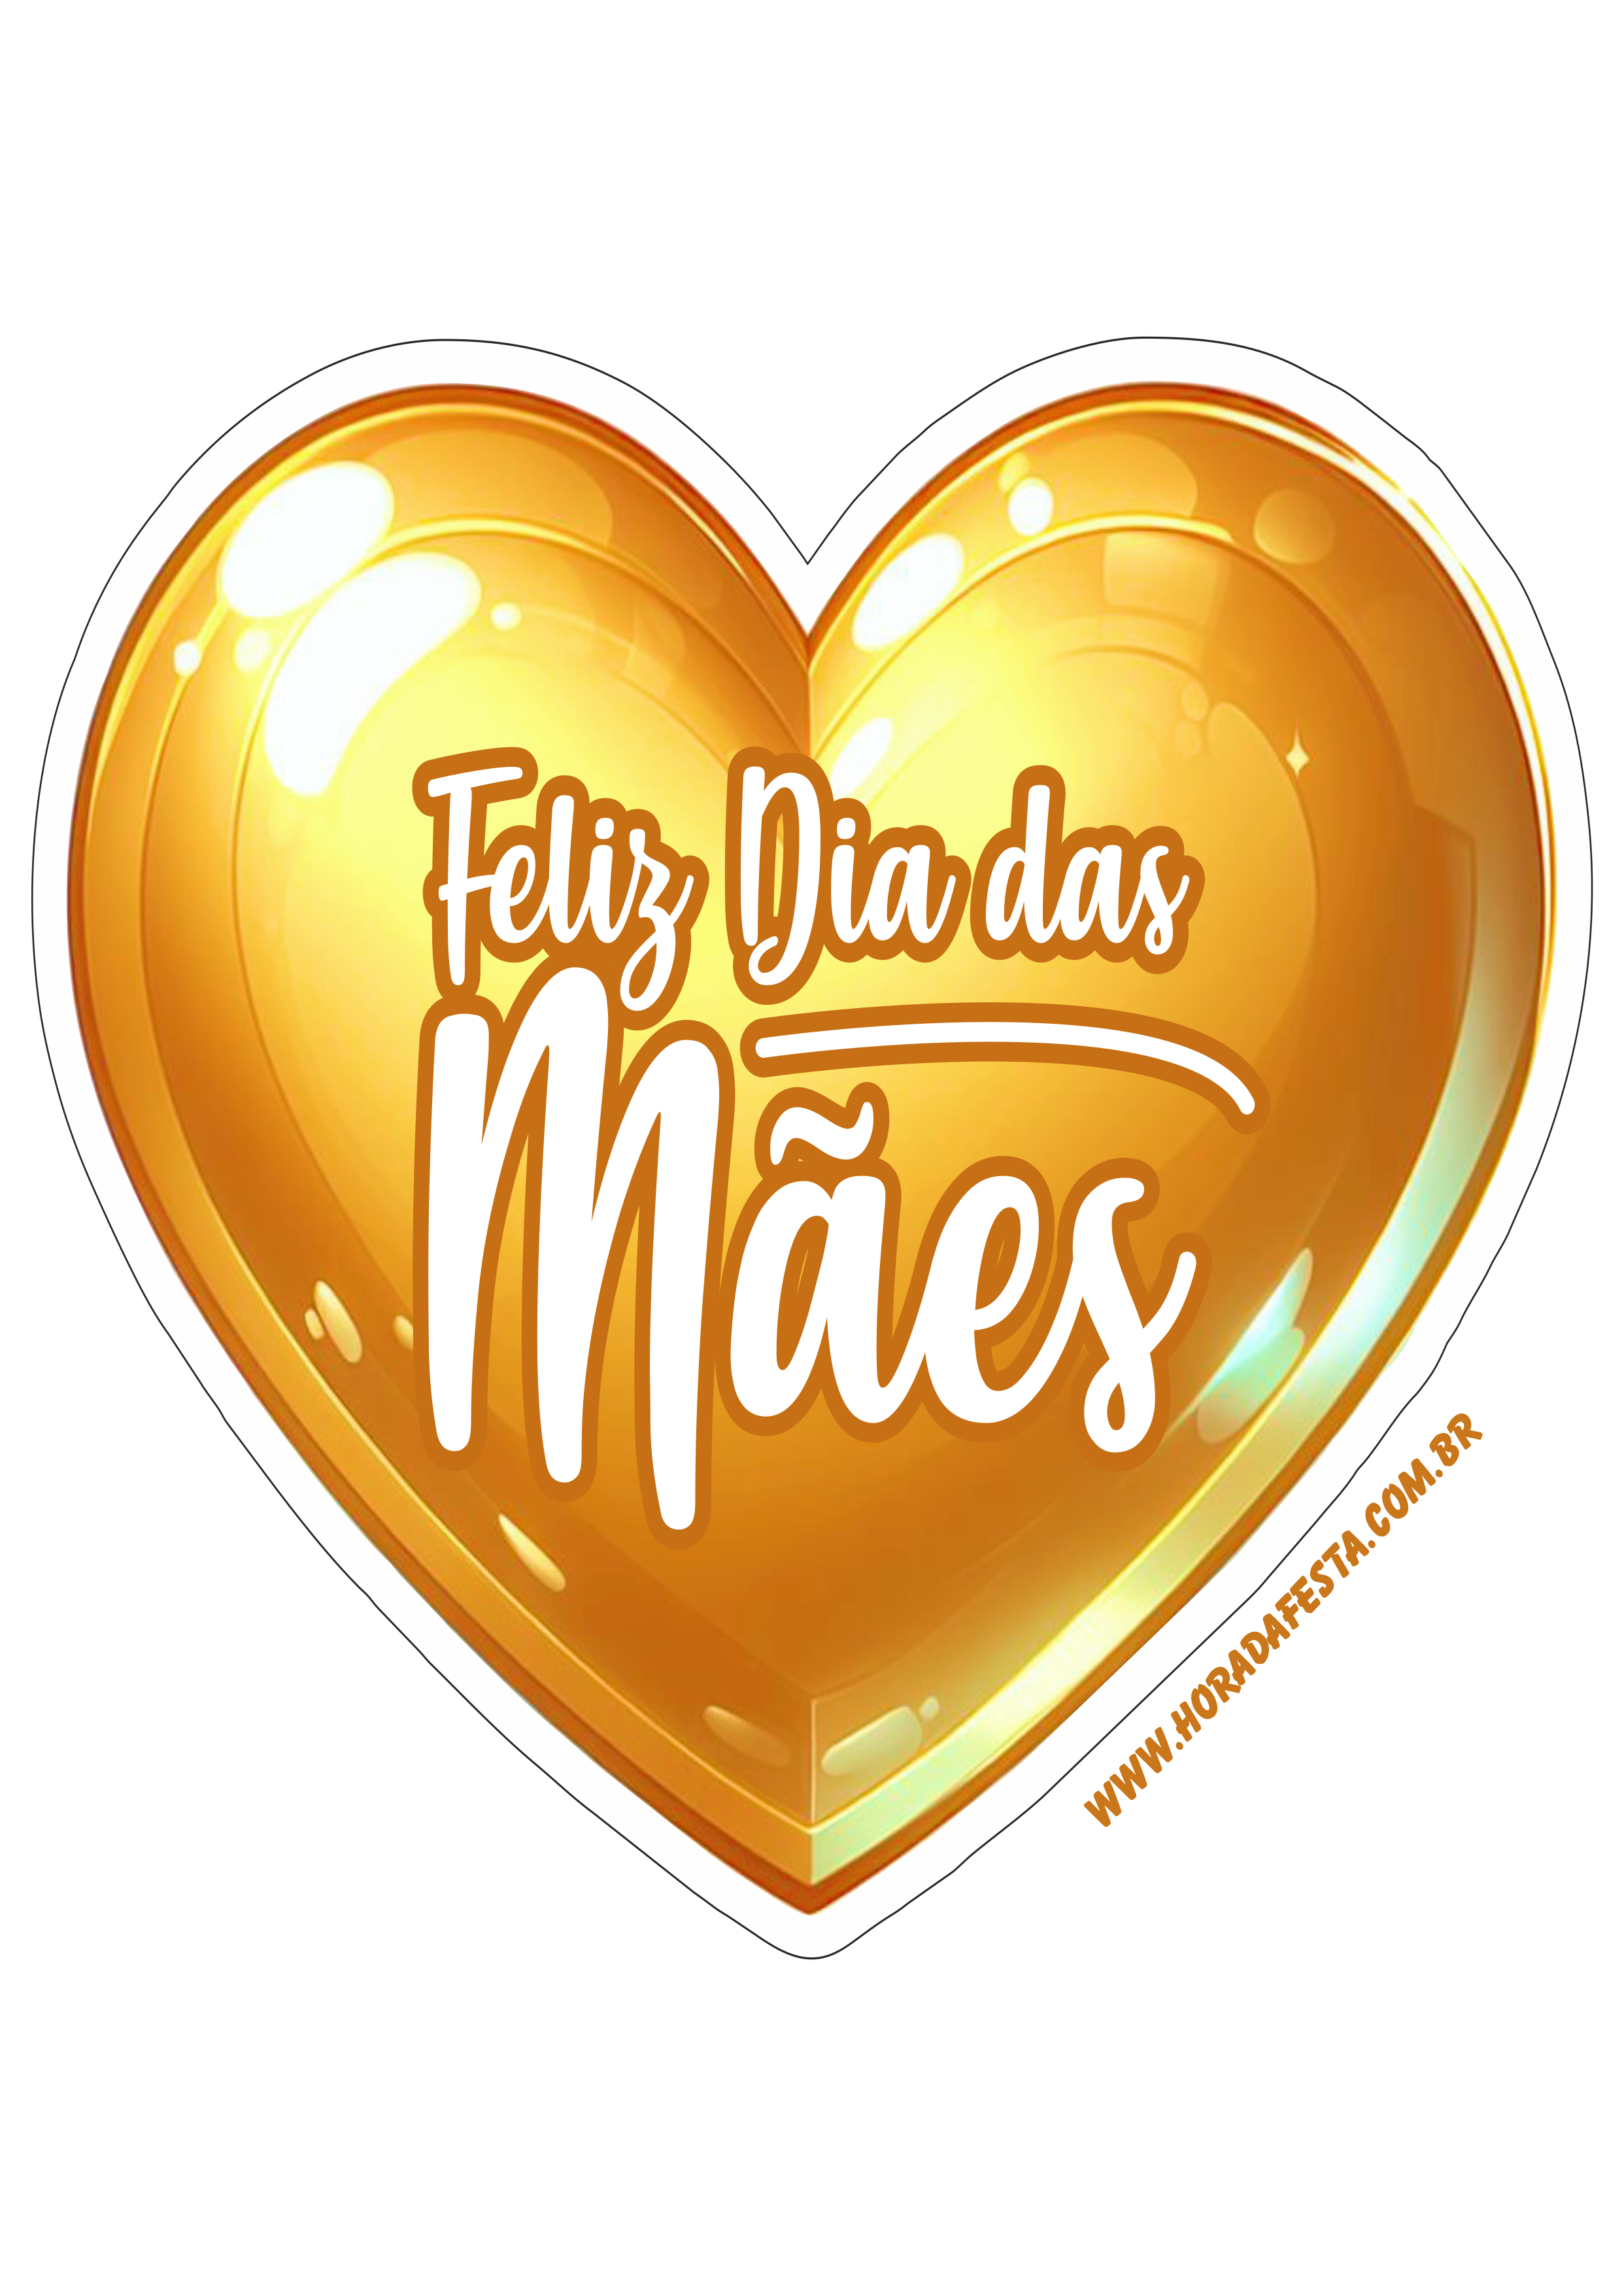 Feliz dia das mães adesivo de coração dourado para decoração happy mother’s day artes gráficas png